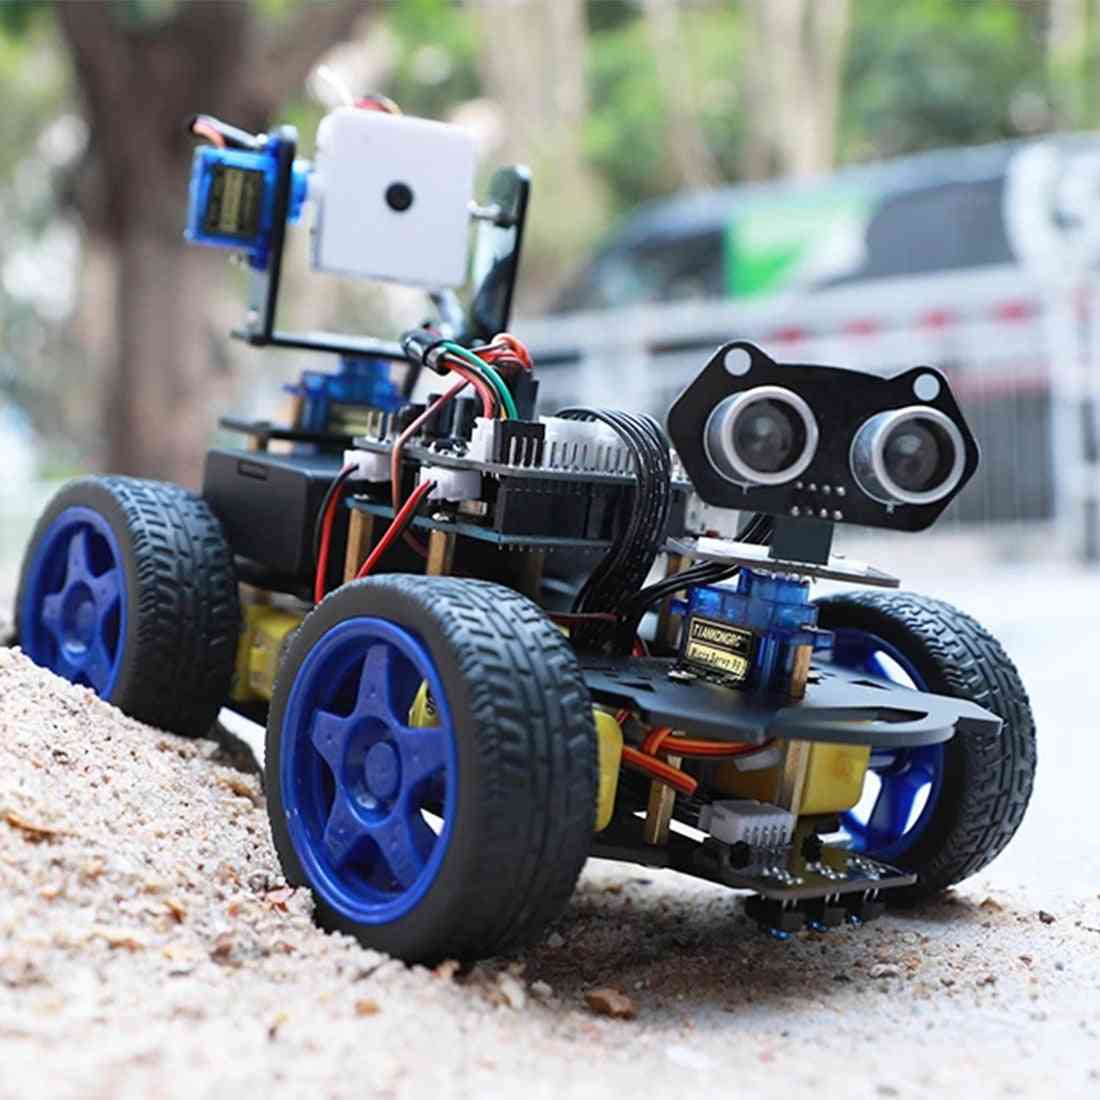 Luminescencyjny moduł ultradźwiękowy, inteligentny samochód robota, kamera wifi, zestaw gimbala do arduino